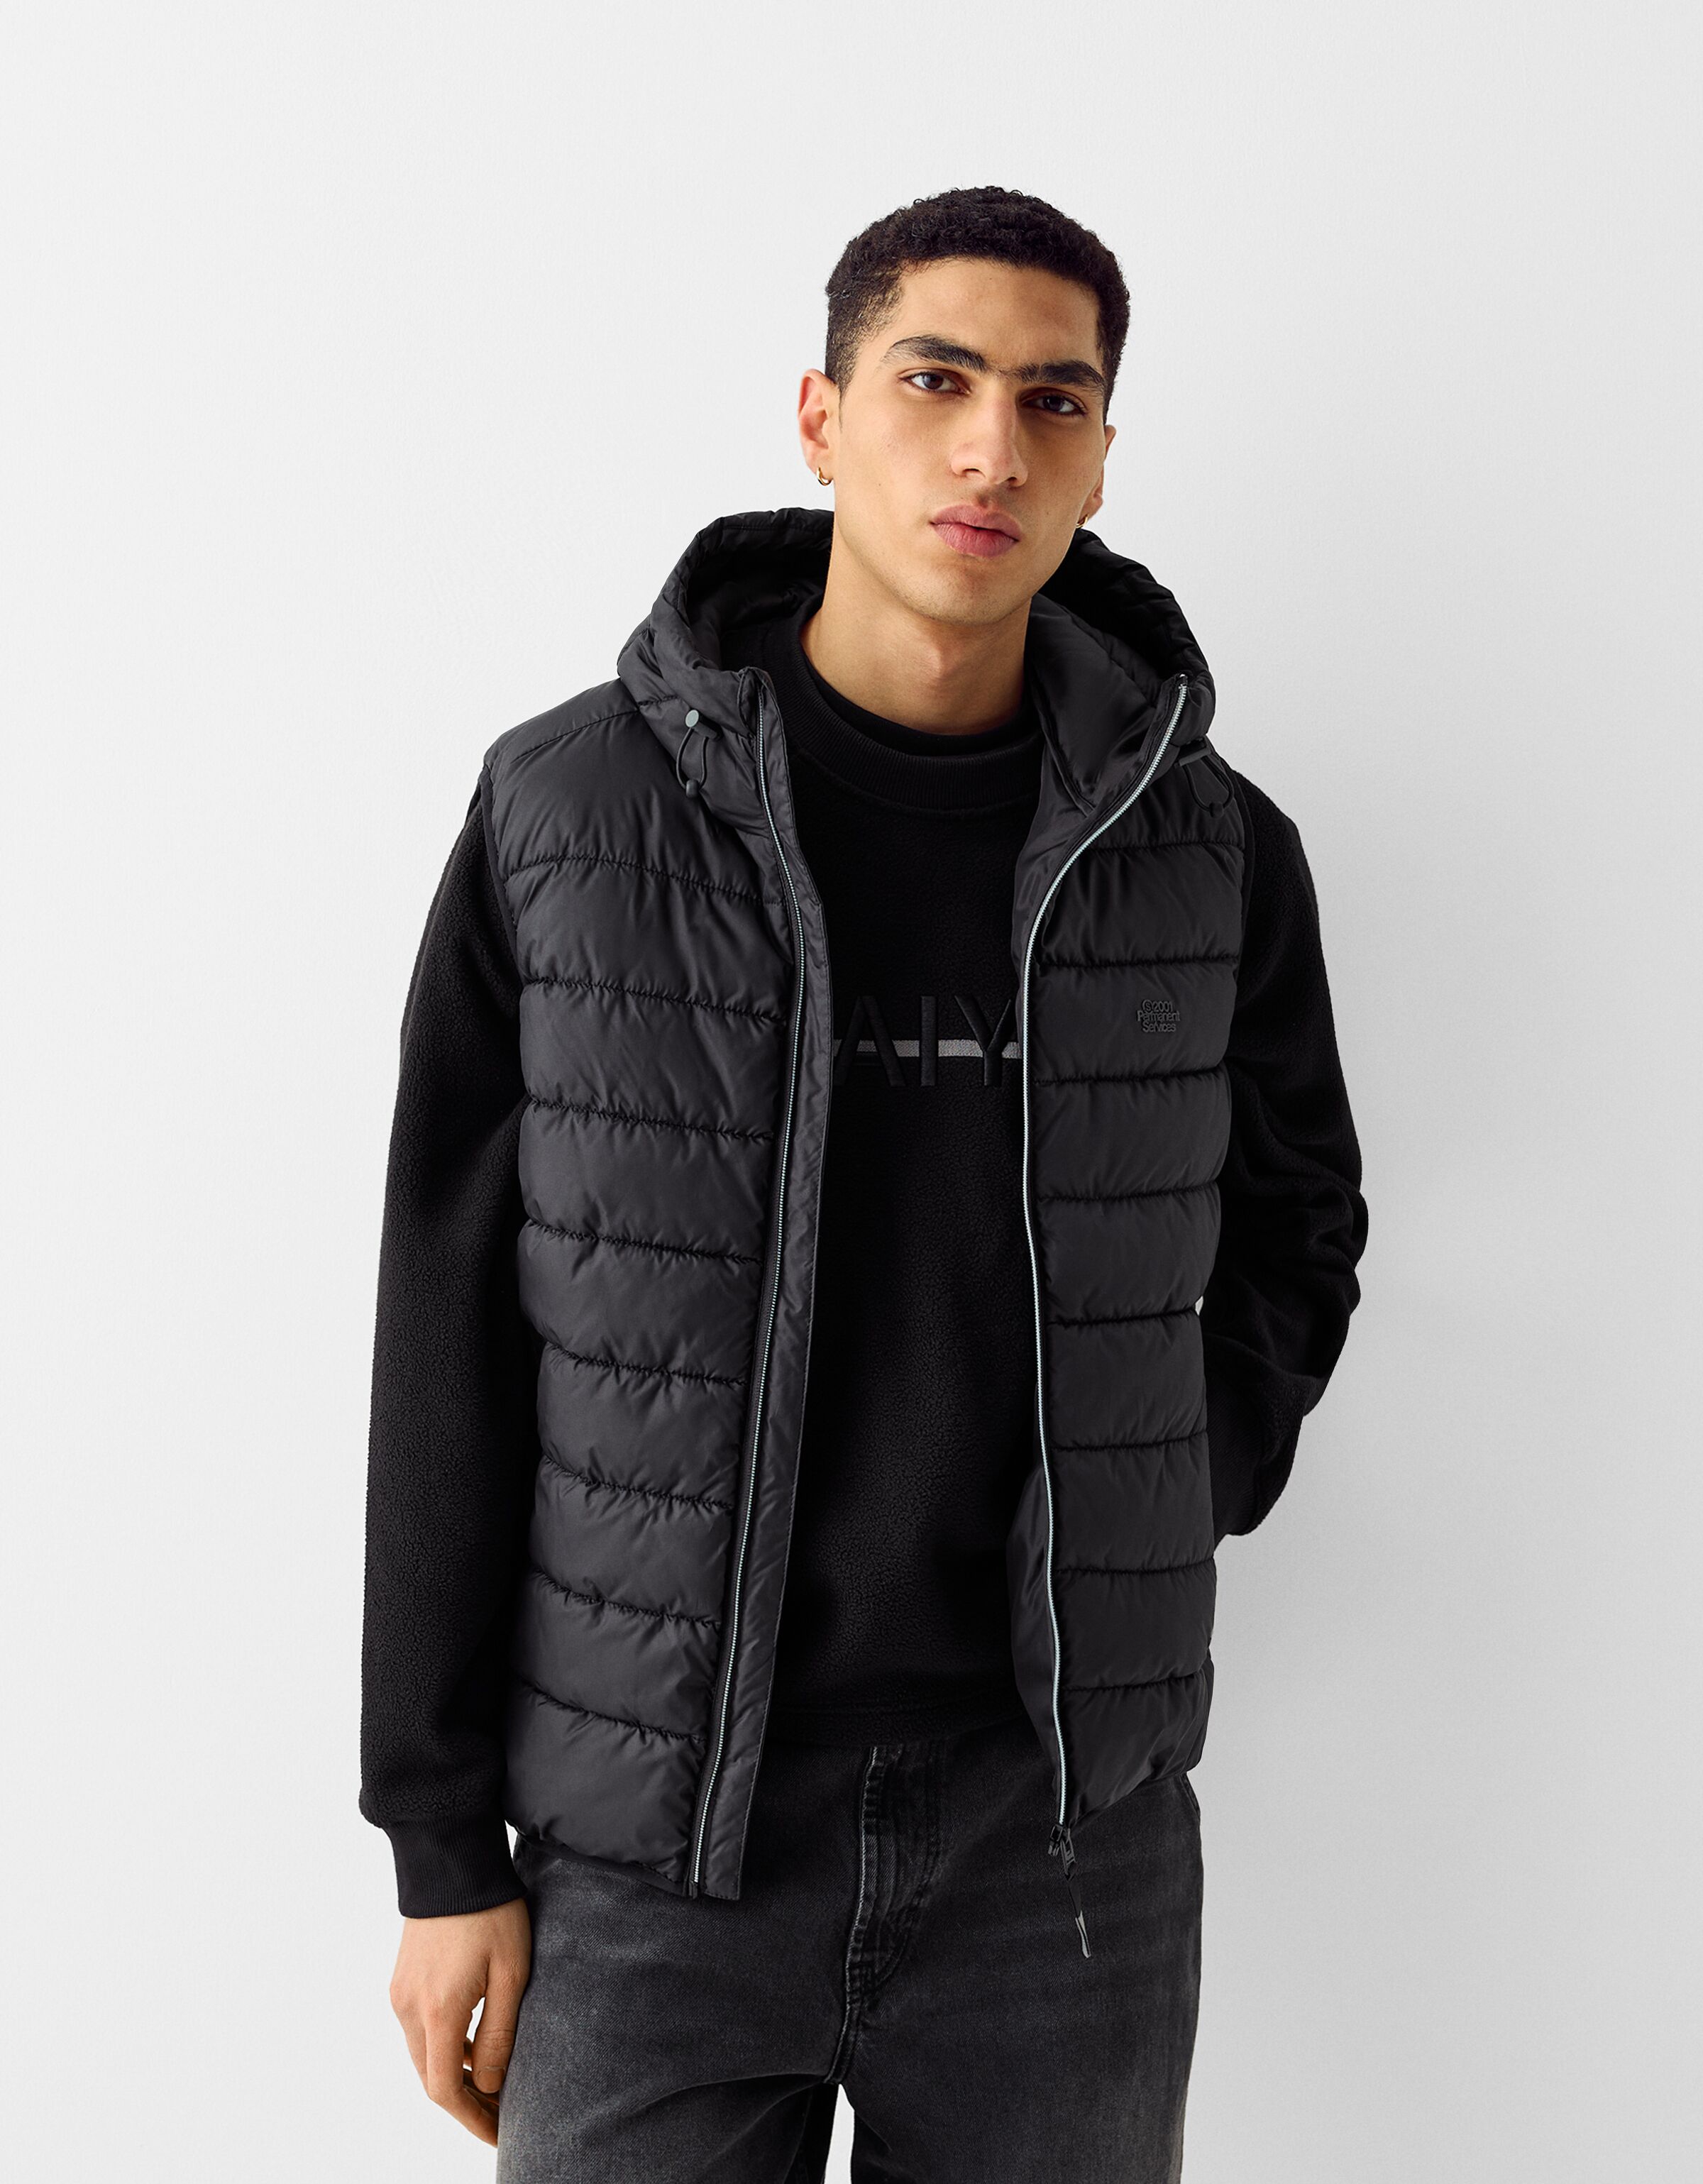 Lightweight puffer vest with hood - Outerwear - Men | Bershka